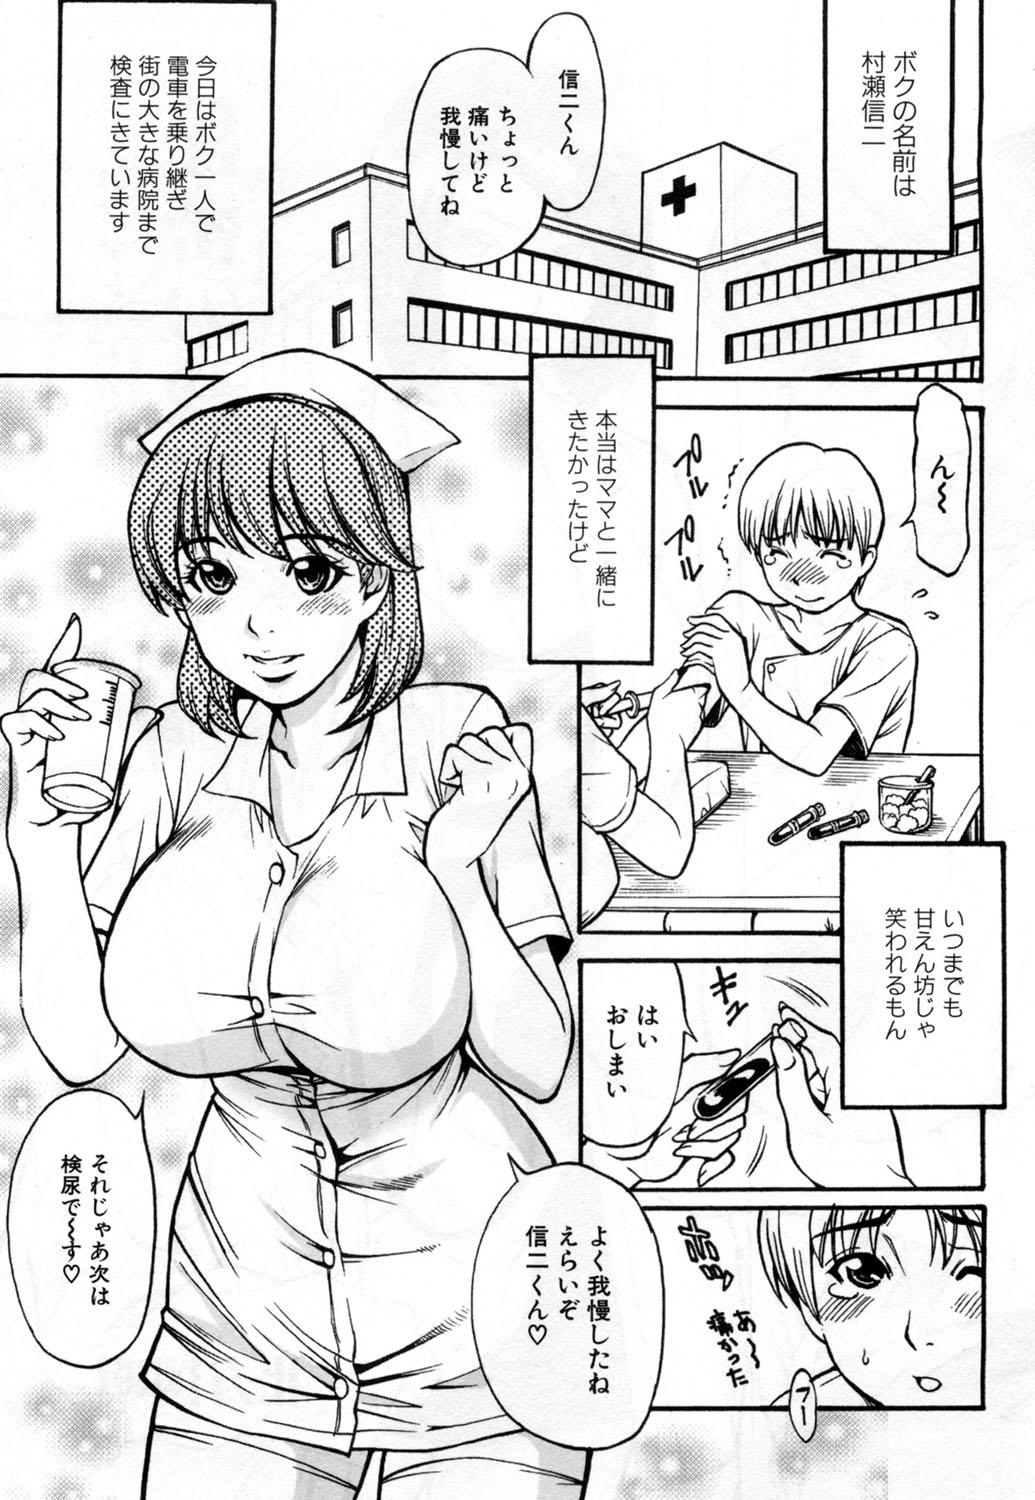 [Kuniaki Kitakata] Boku no Mama (My Mom) Chapters 1-4 page 41 full